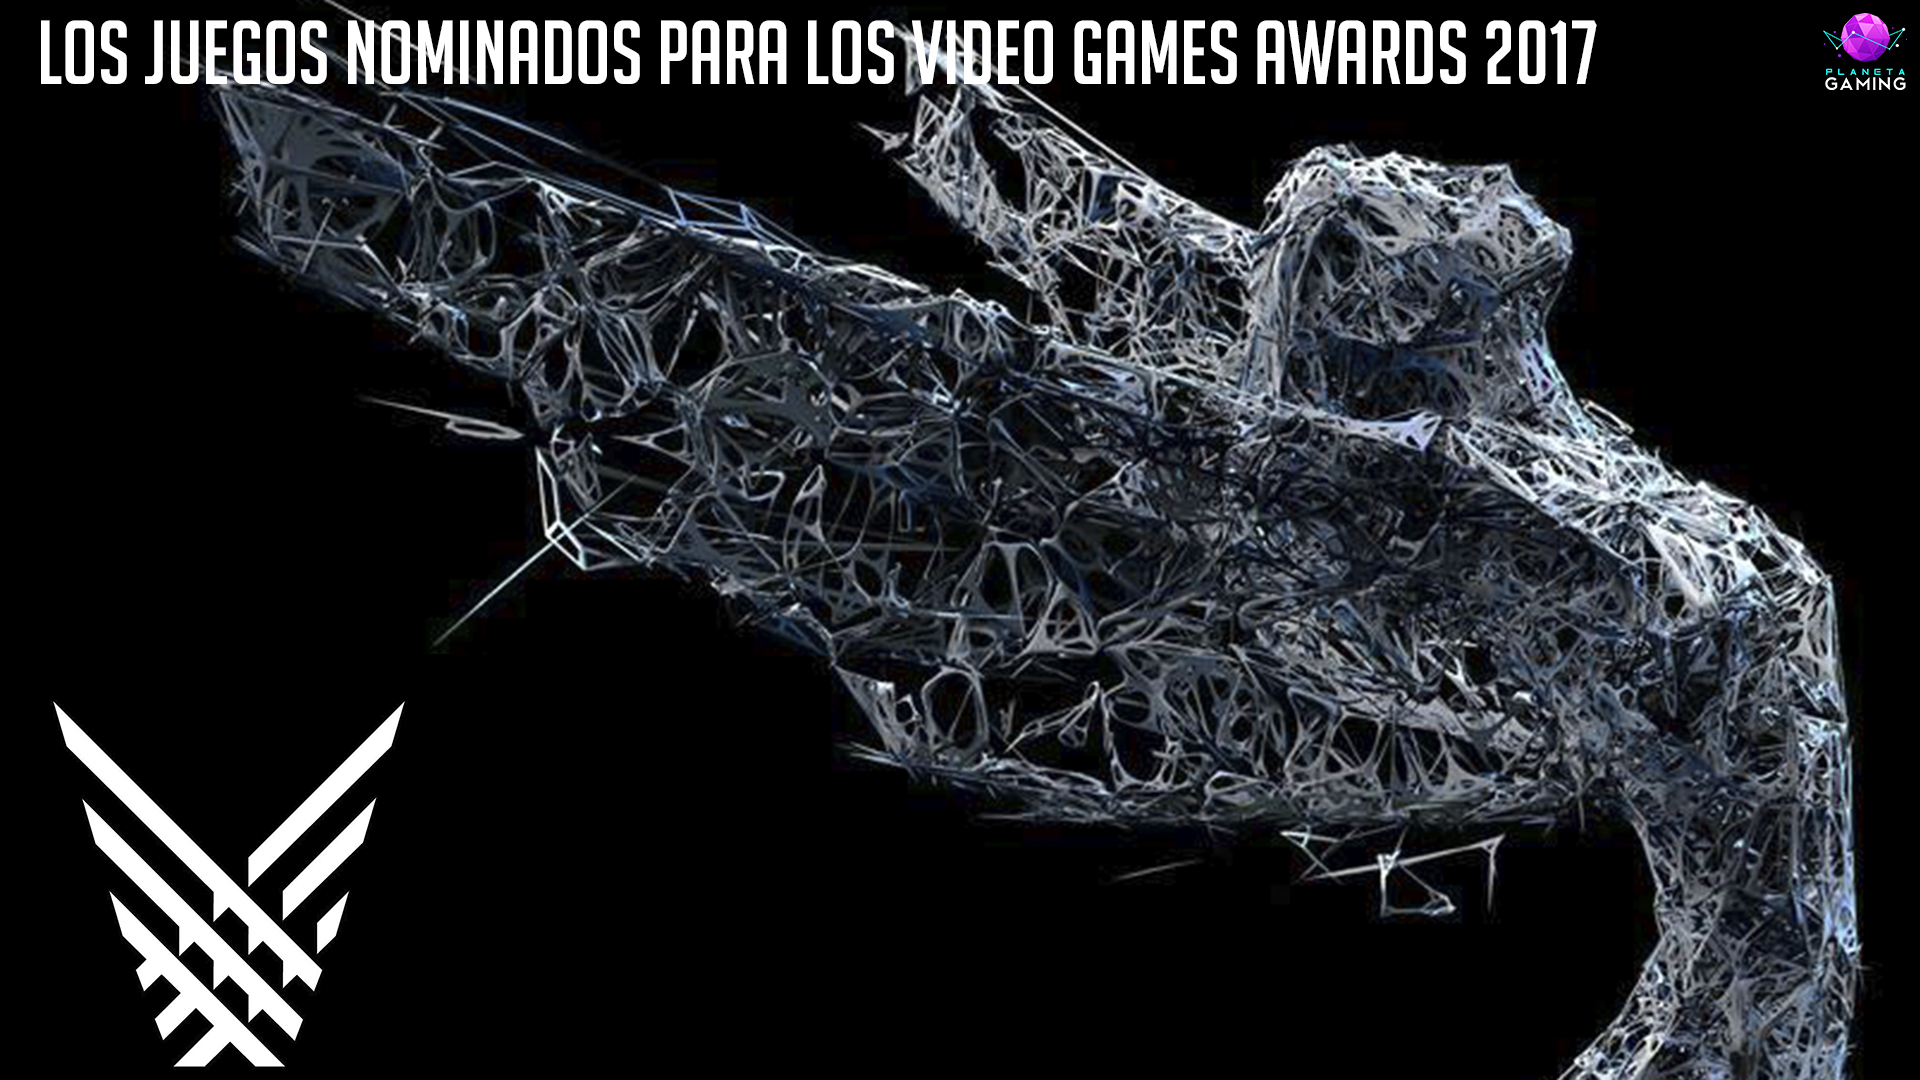 Los juegos nominados para los Video Games Awards 2017